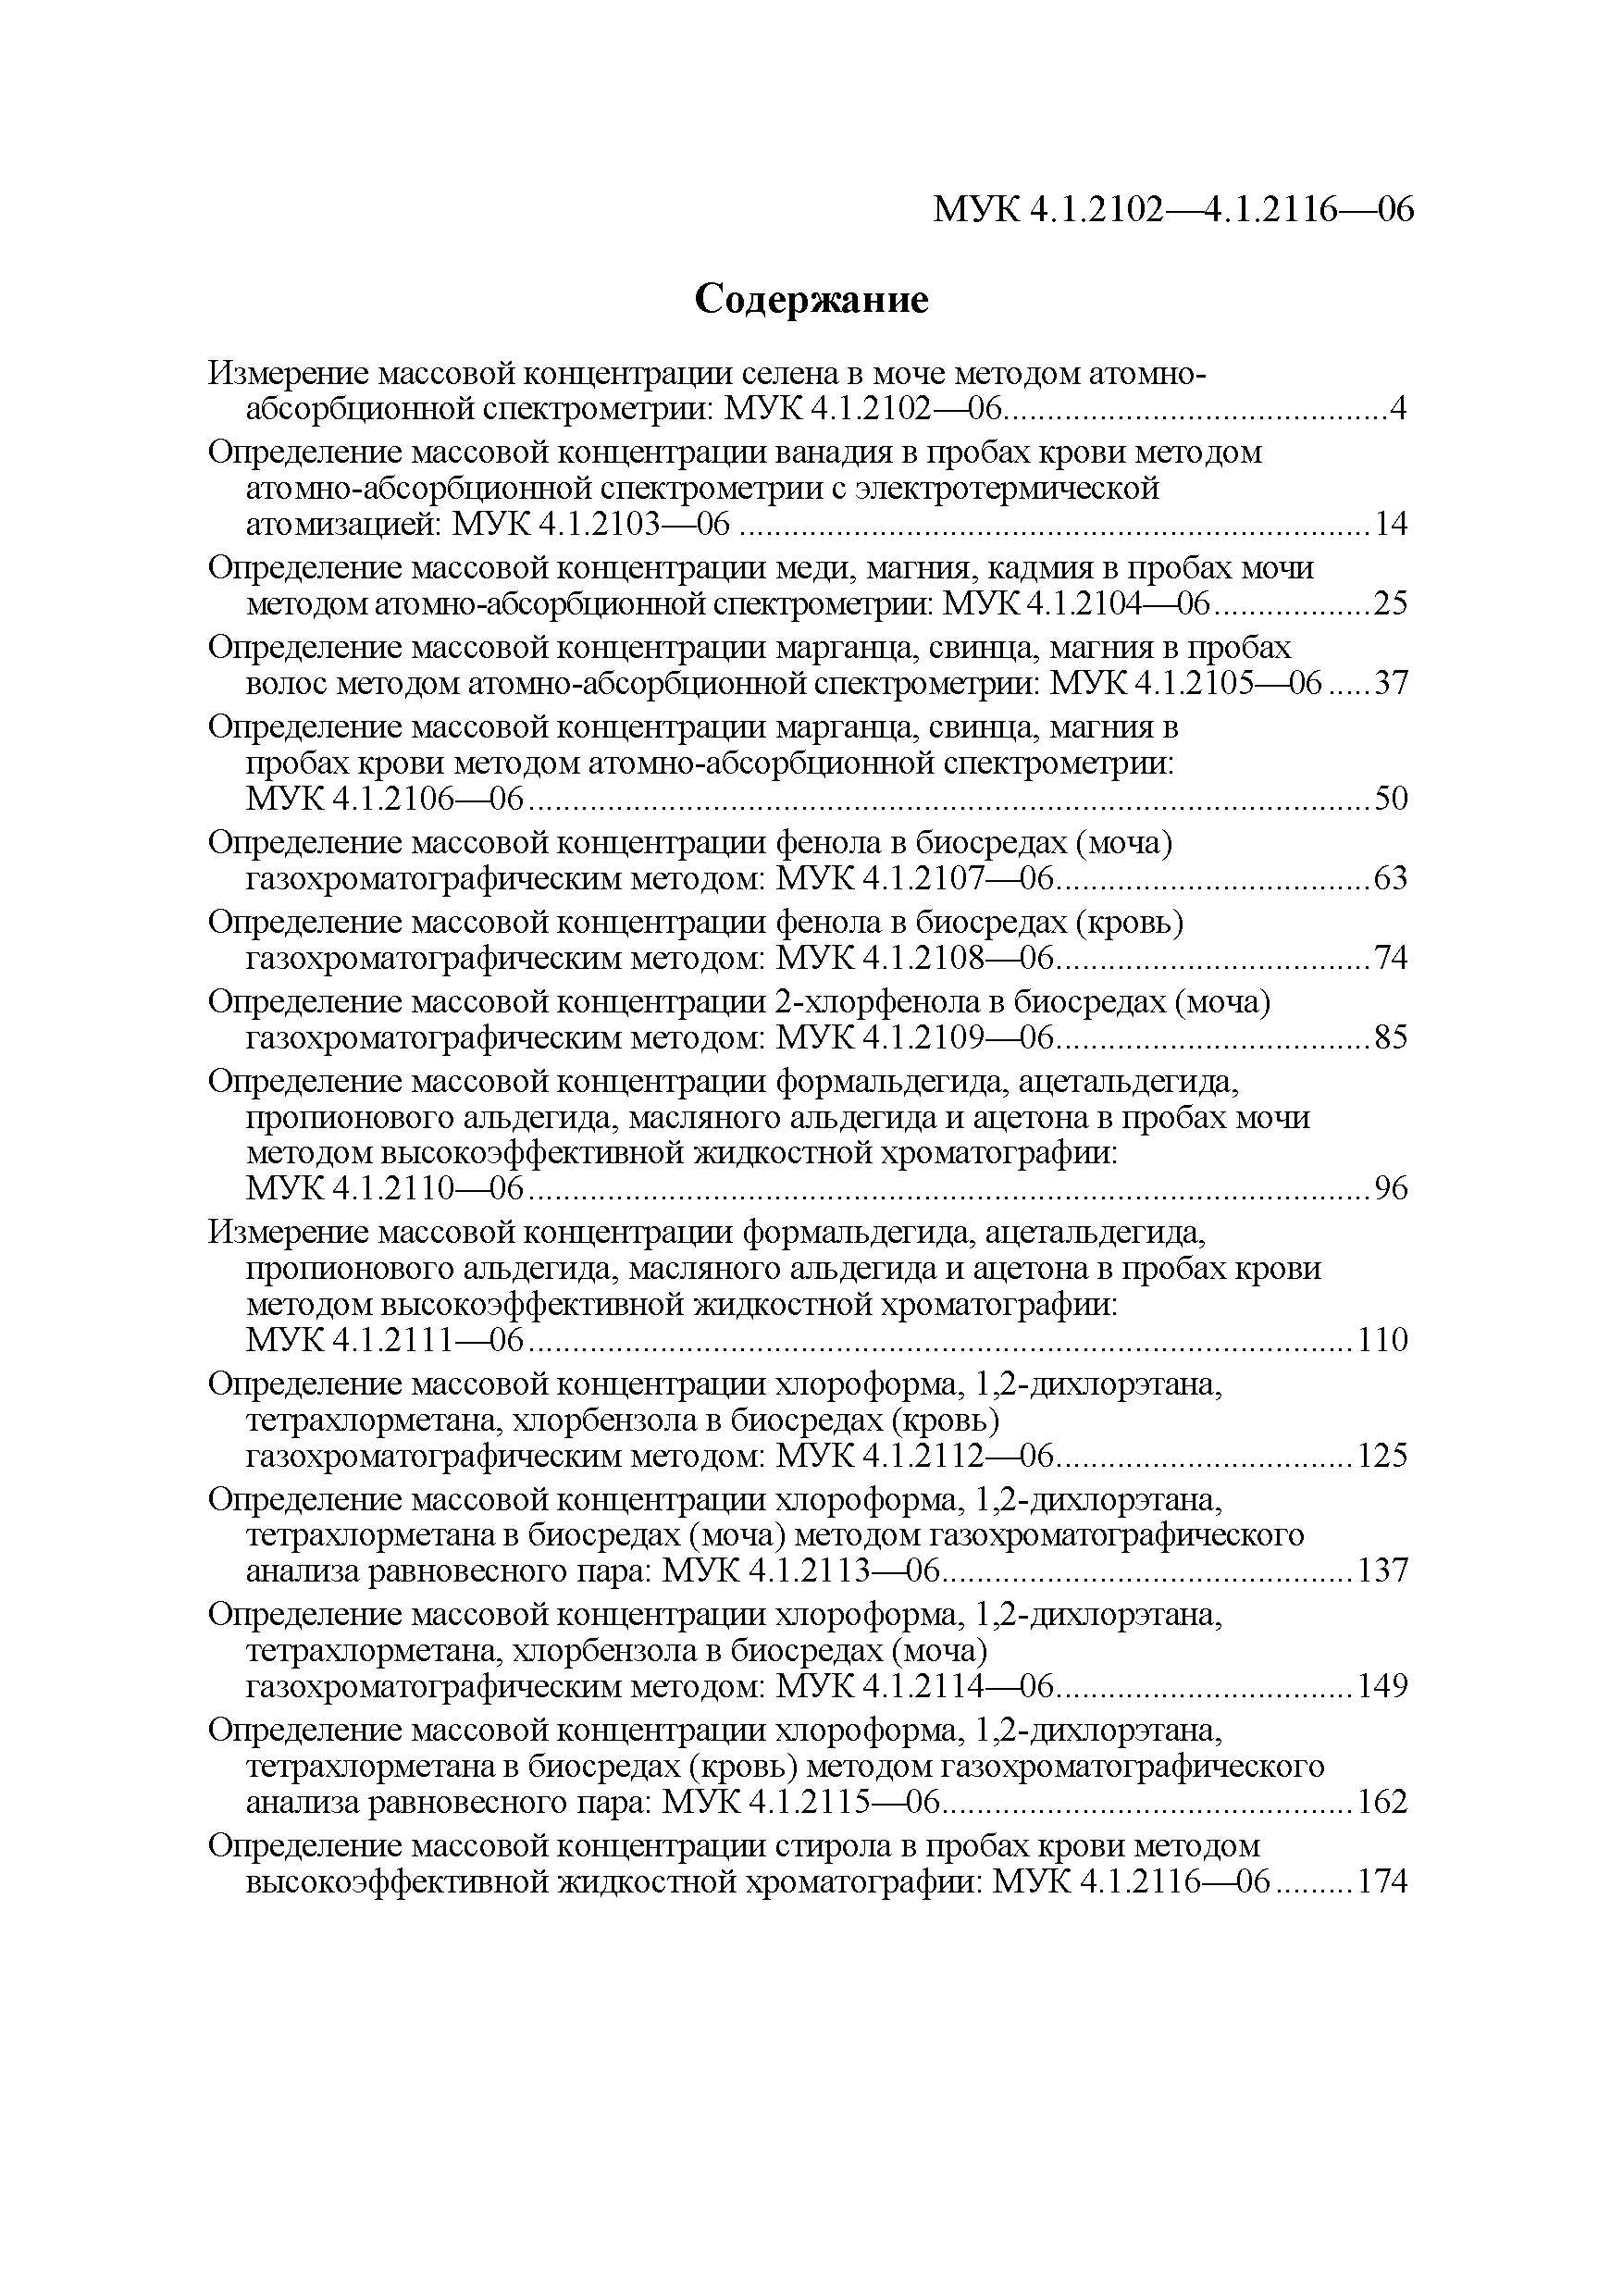 МУК 4.1.2106-06